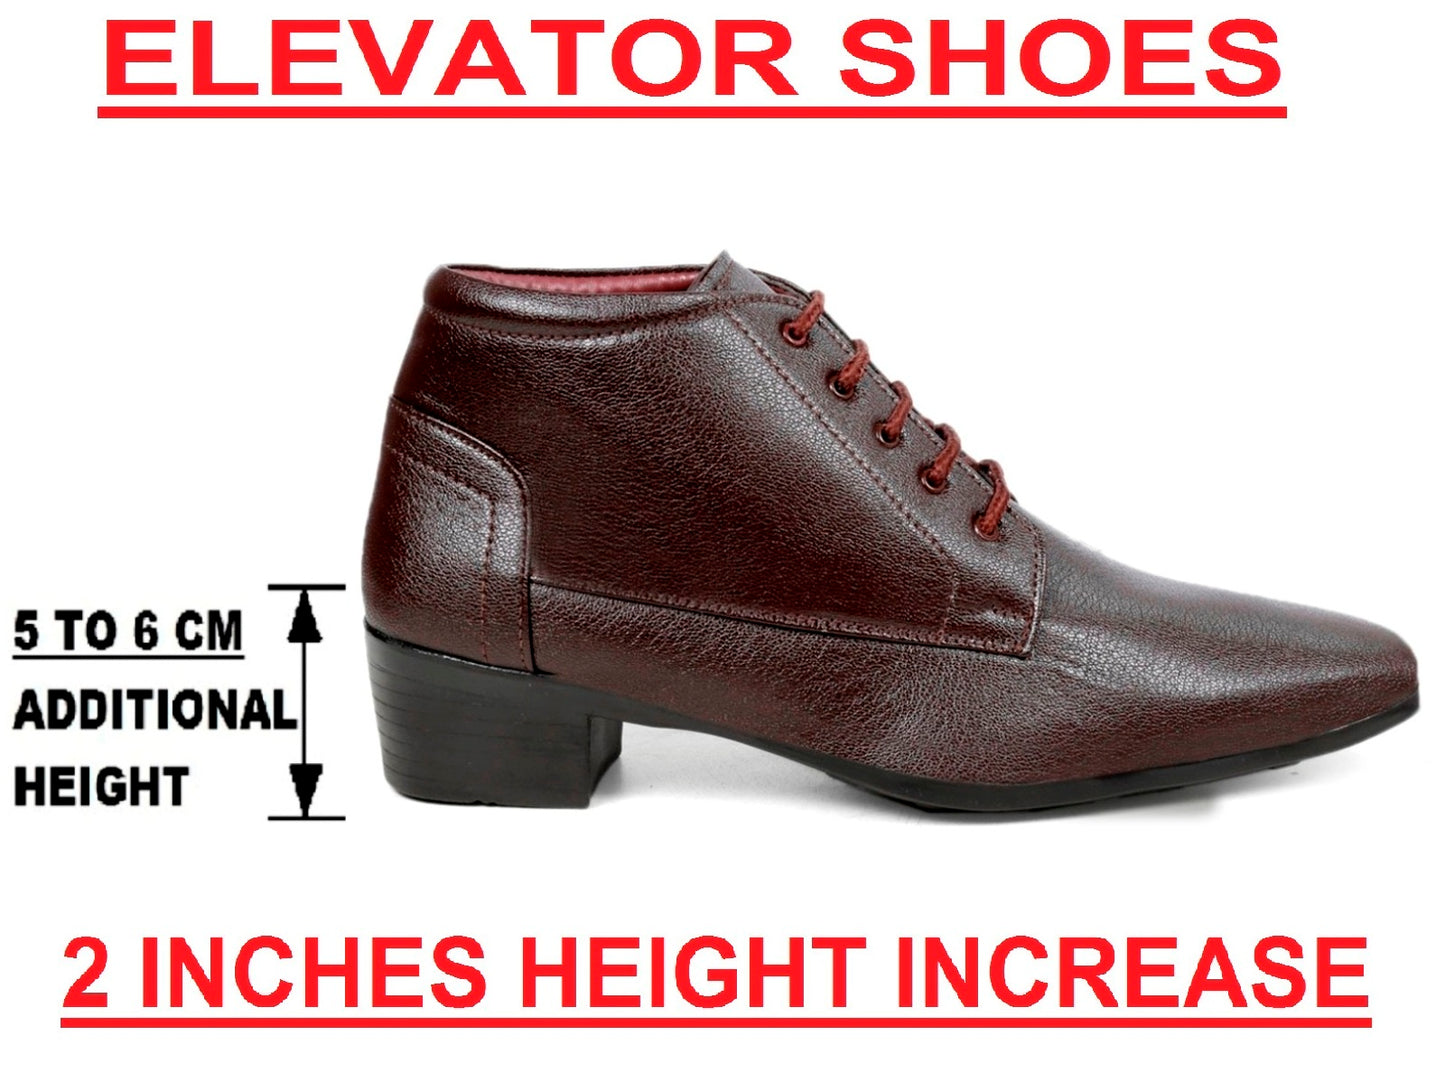 Men's Elevator Faux Leather Office Wear Boots